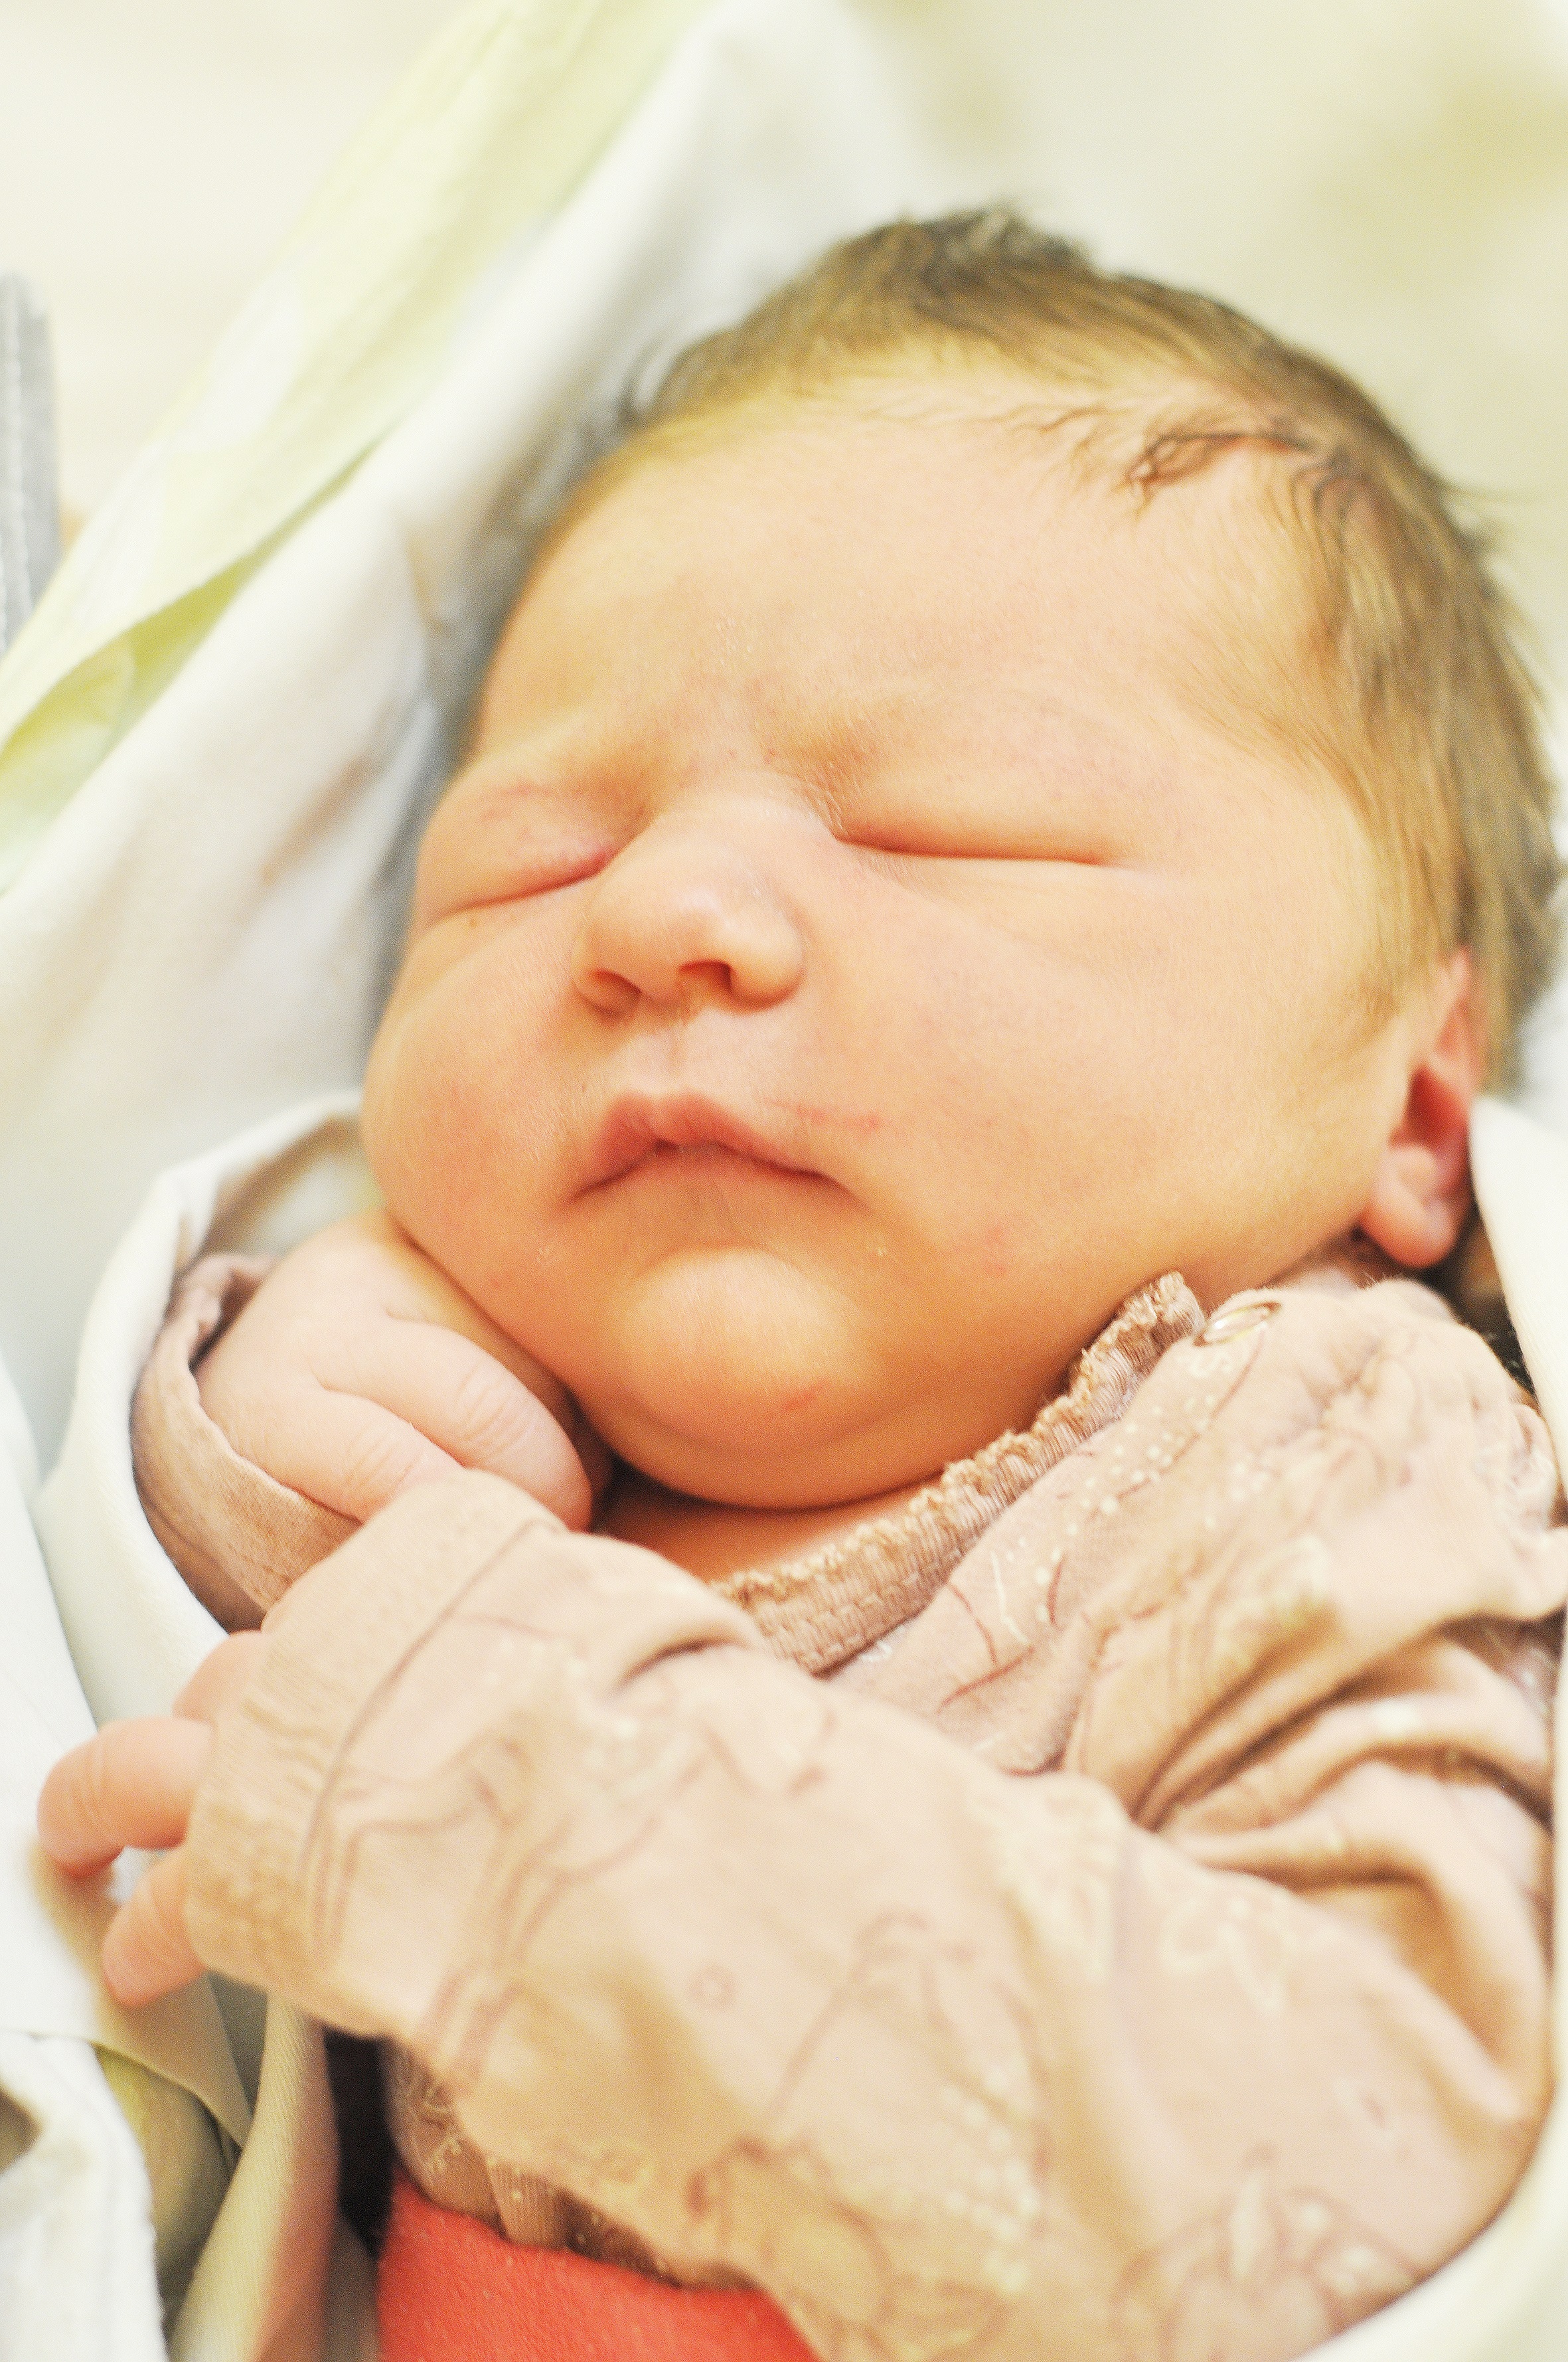 Klara Kurzpiot z Modzurowa córka Anny i Denisa. Dziecko urodziło się 17 lutego. Warzyła 3810 g i mierzyła 58 cm.